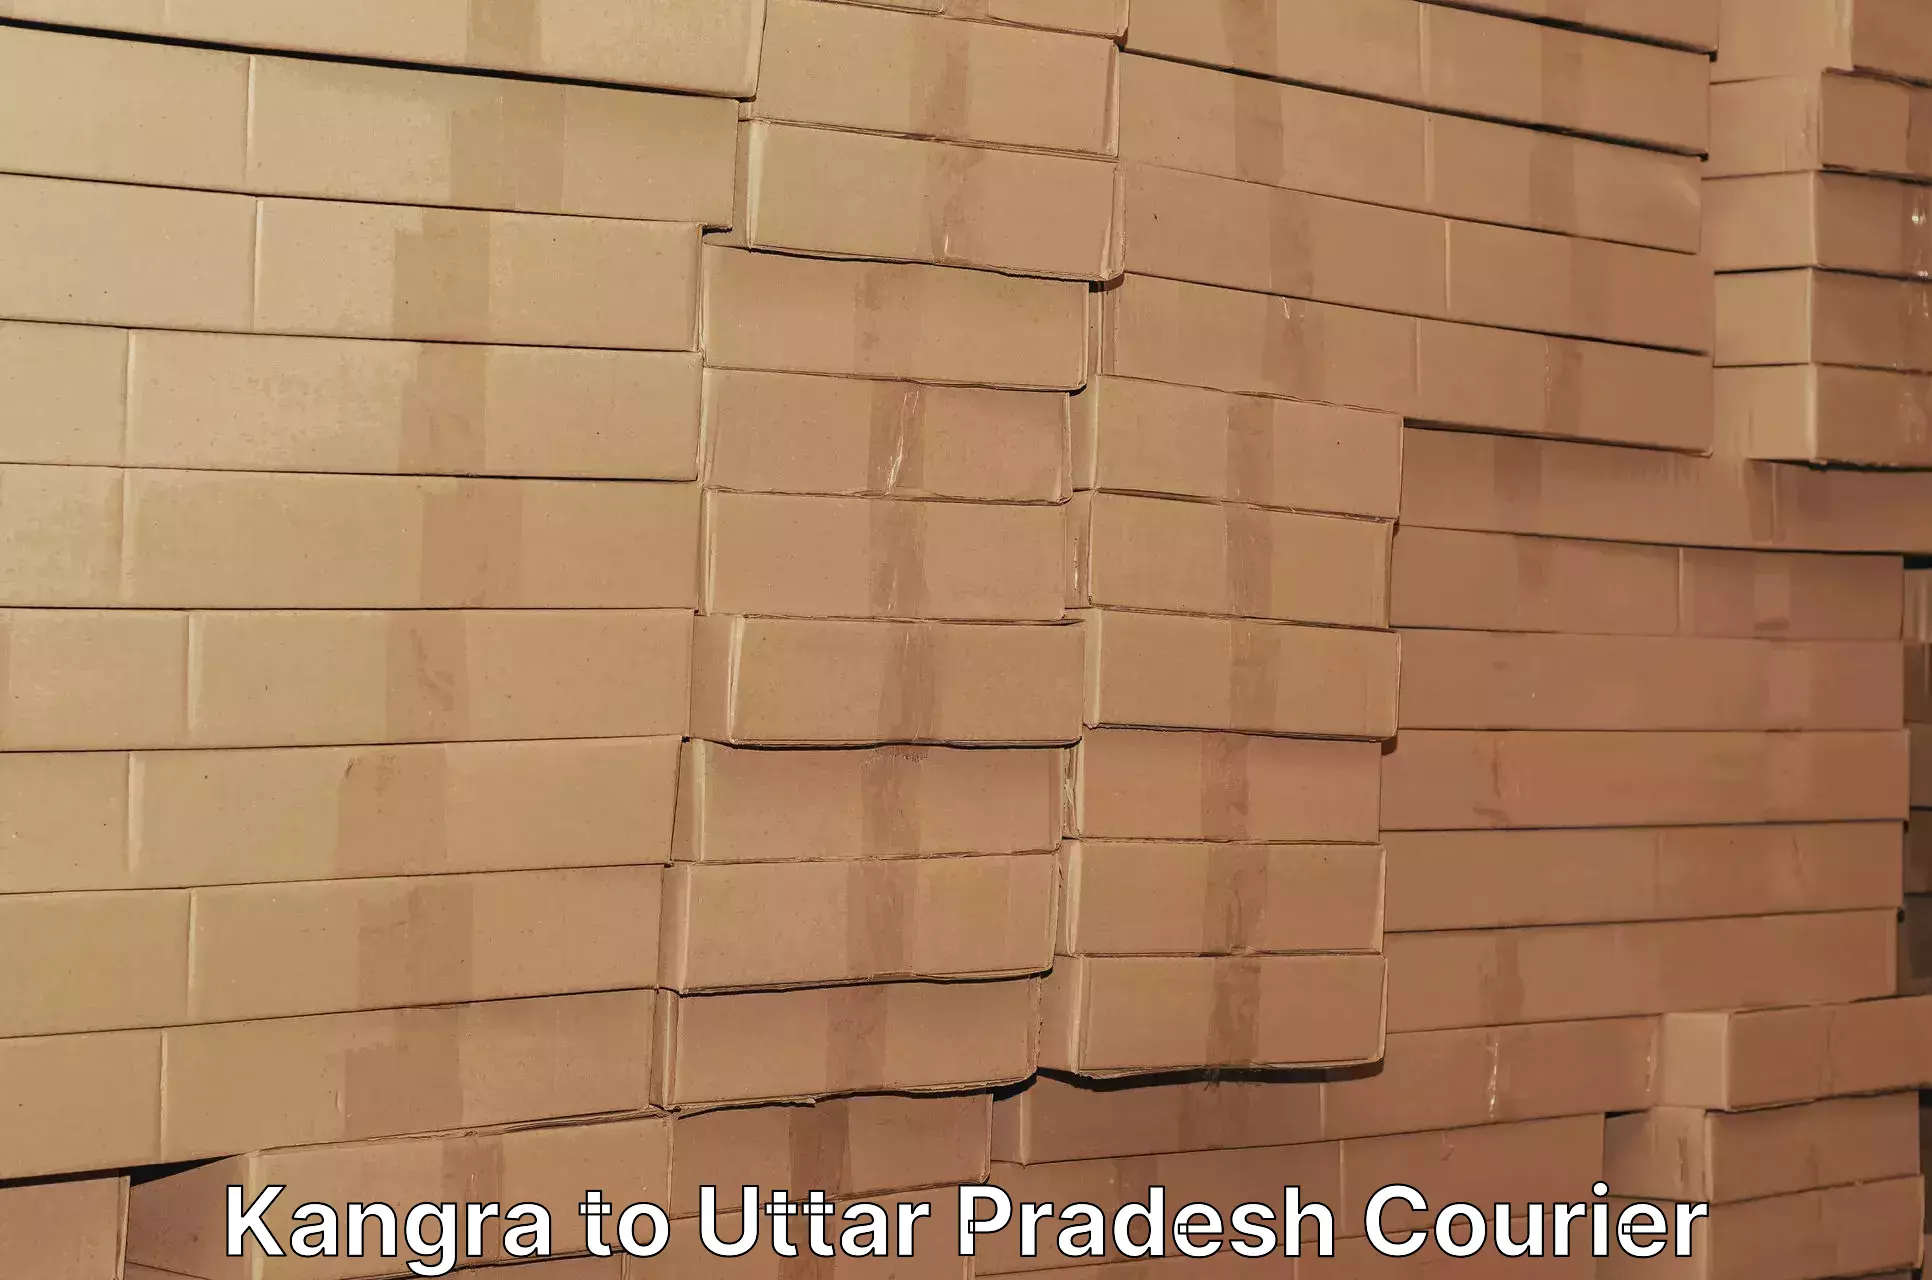 Ground shipping in Kangra to Agra